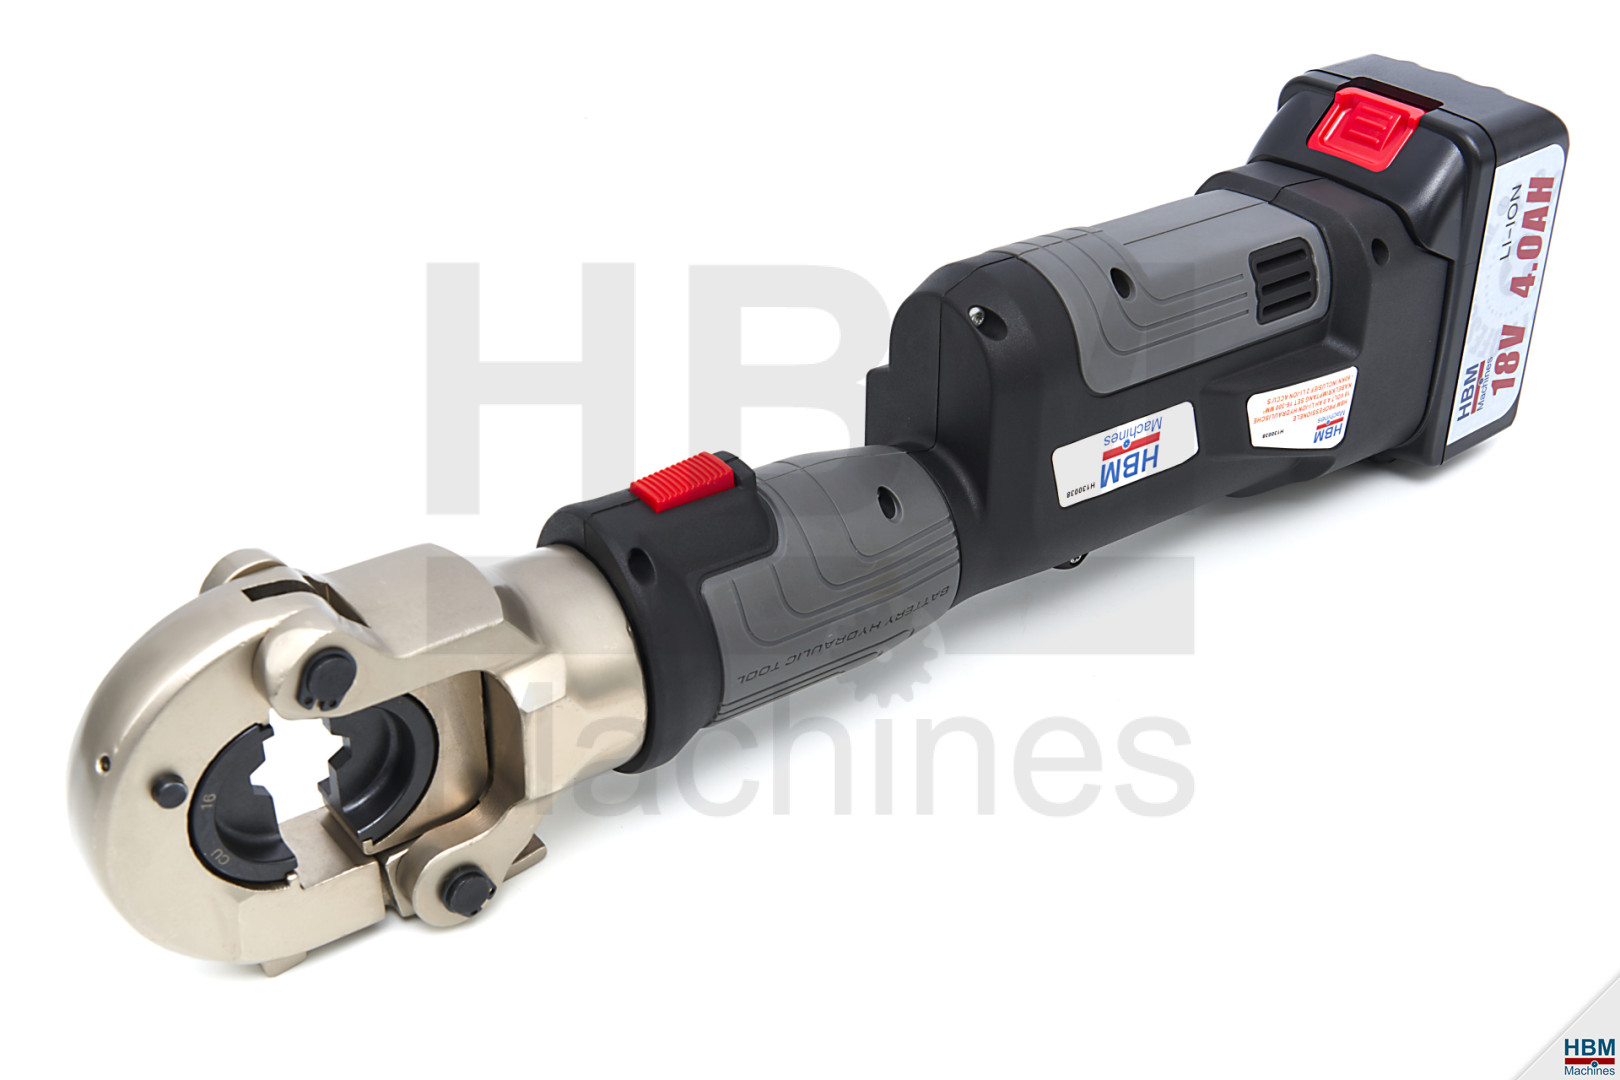 HBM Pince à sertir électrique hydraulique professionnelle 16-400mm2 - 120KN  - 18V- 4.0Ah